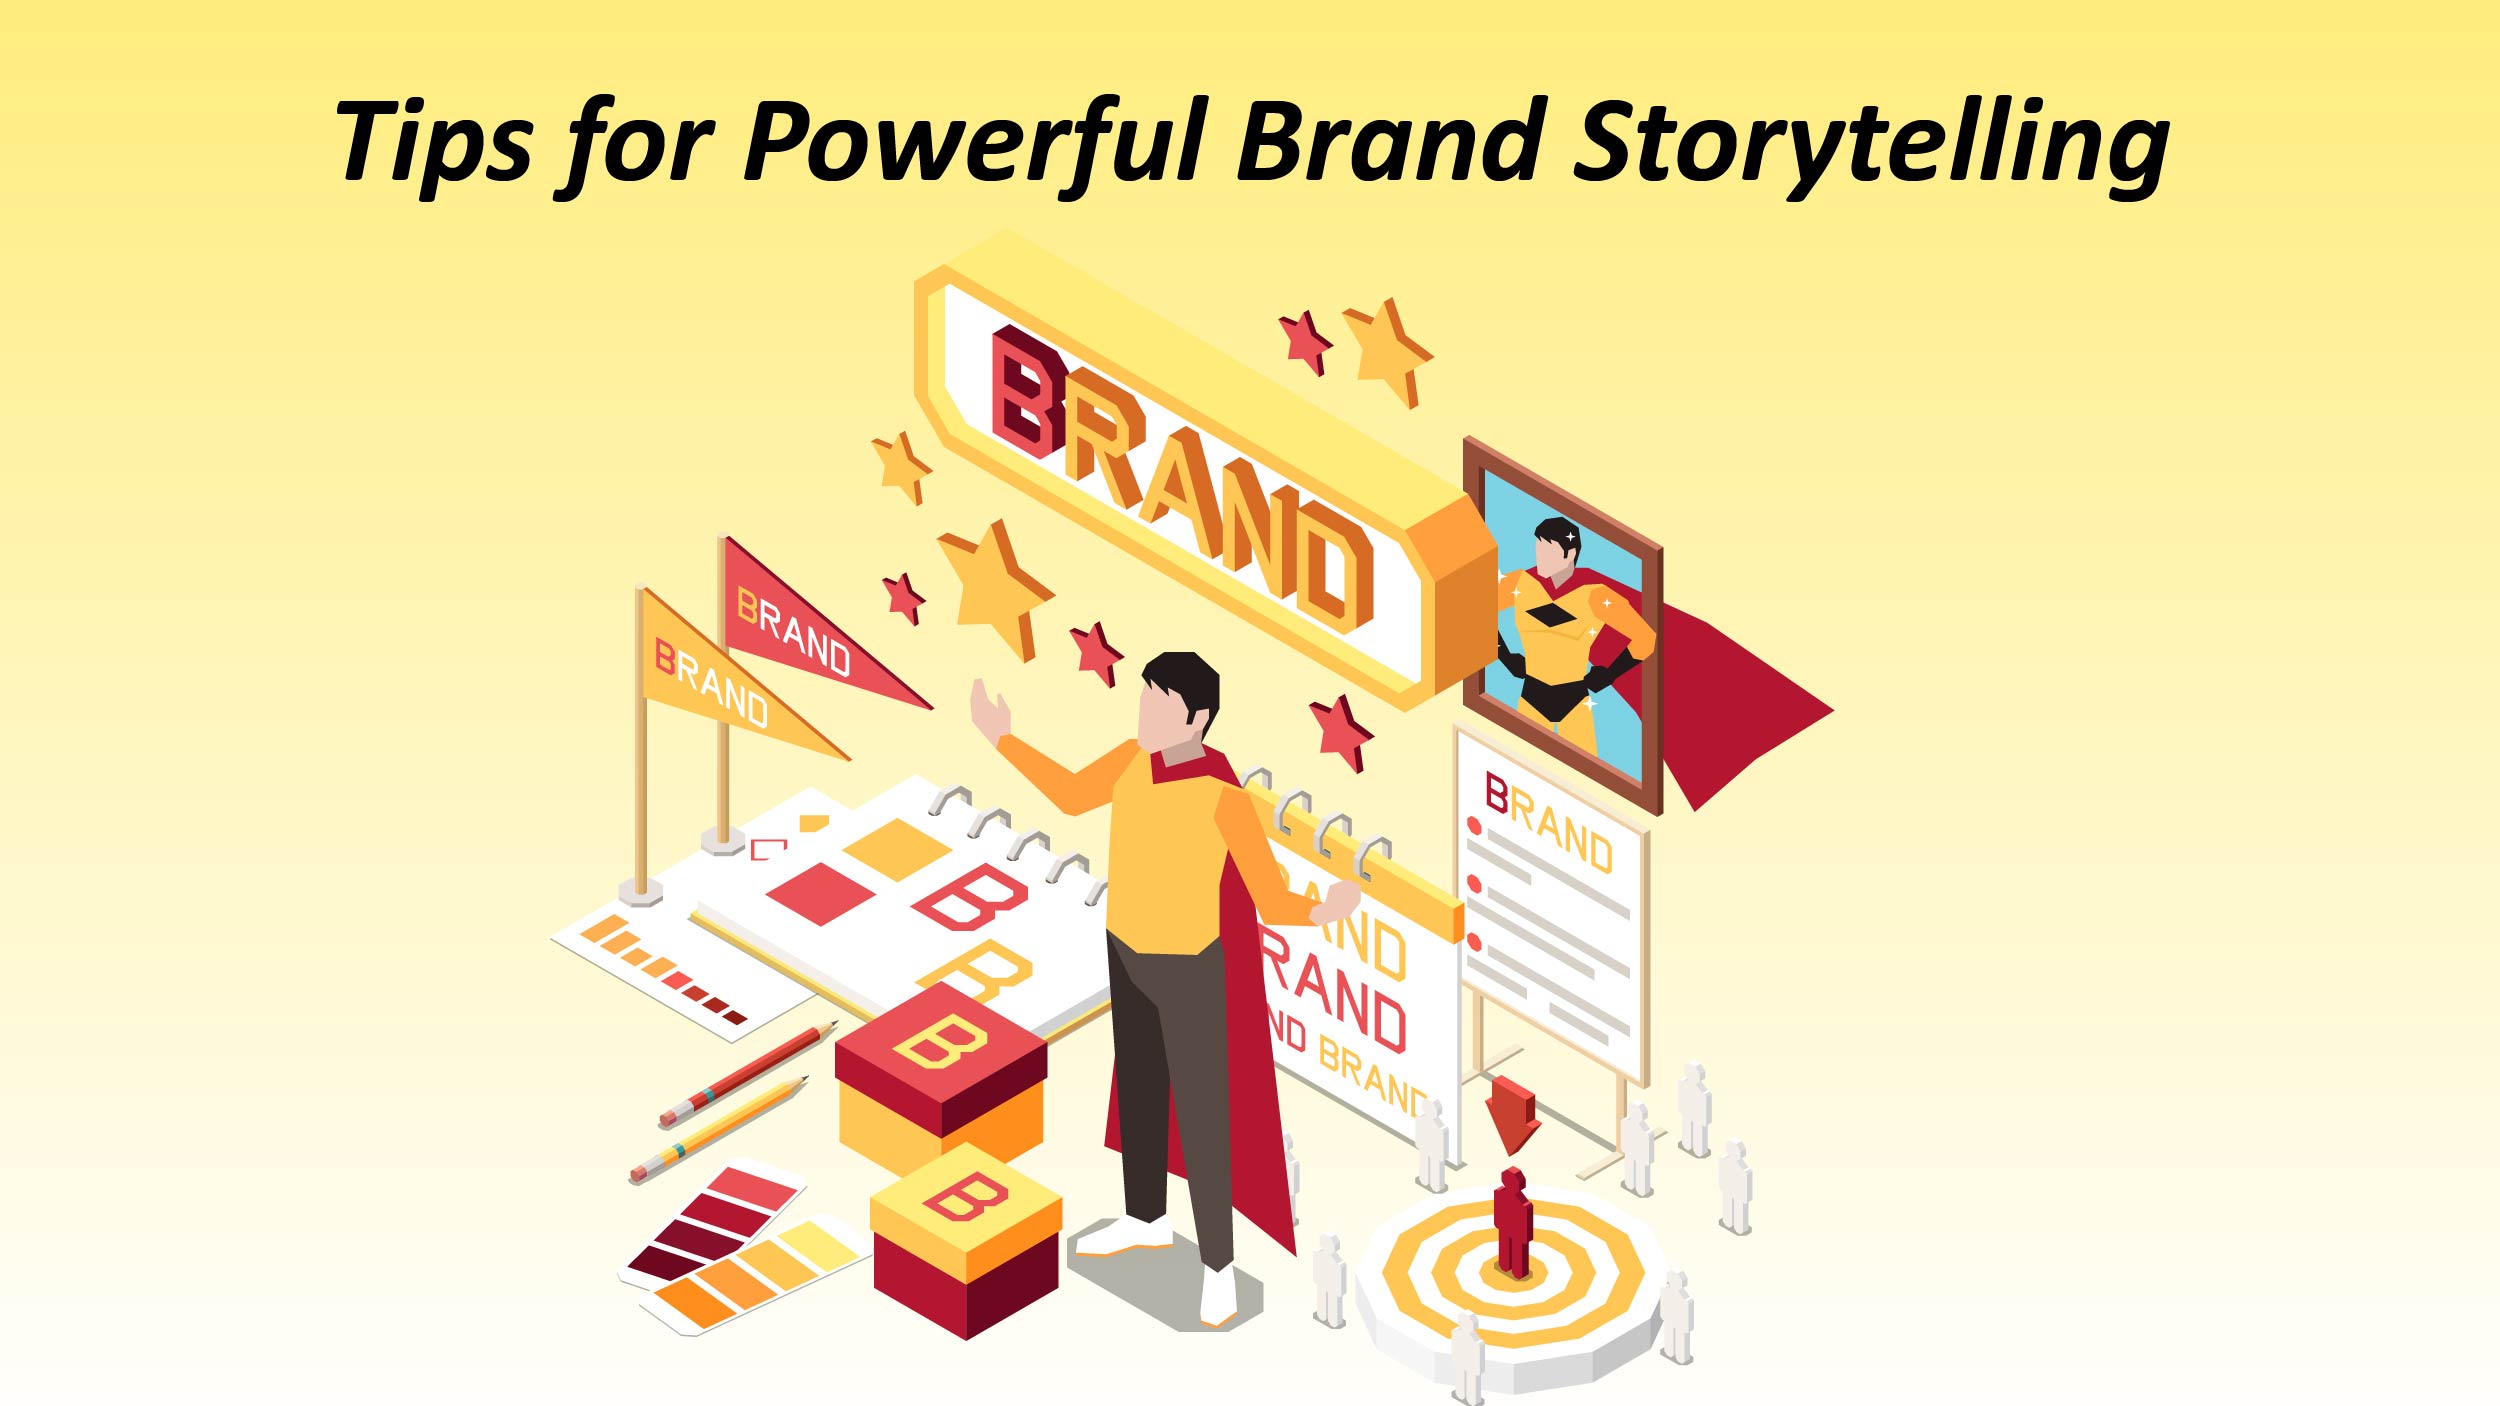 Brand Storytelling